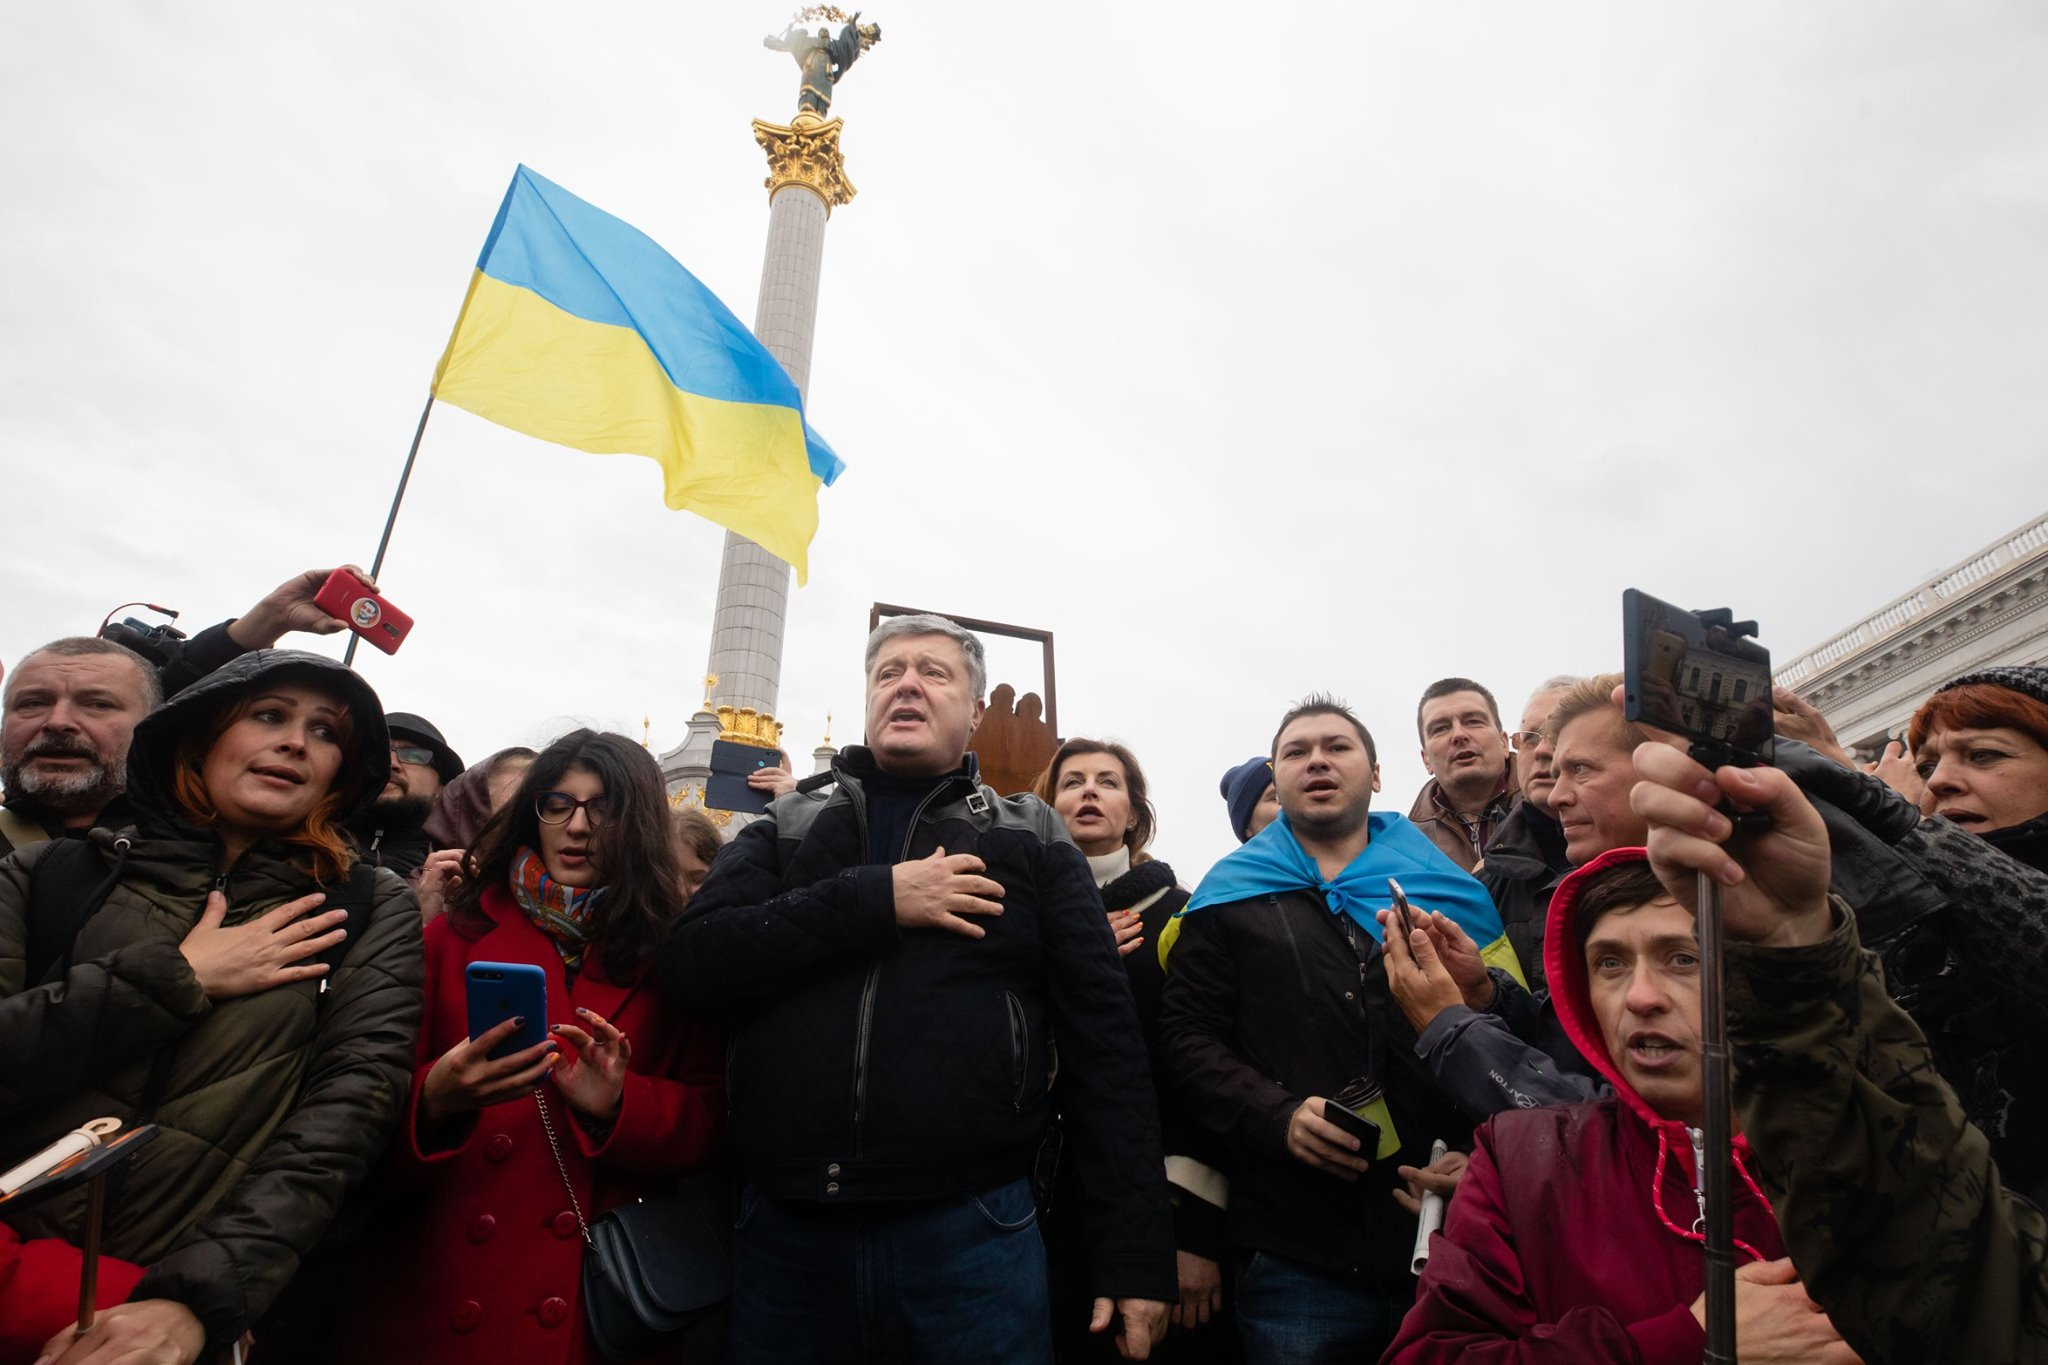 Петро Порошенко з дружиною на акцыъ протесту Ні капітуляції! , 6 жовтня 2019 року